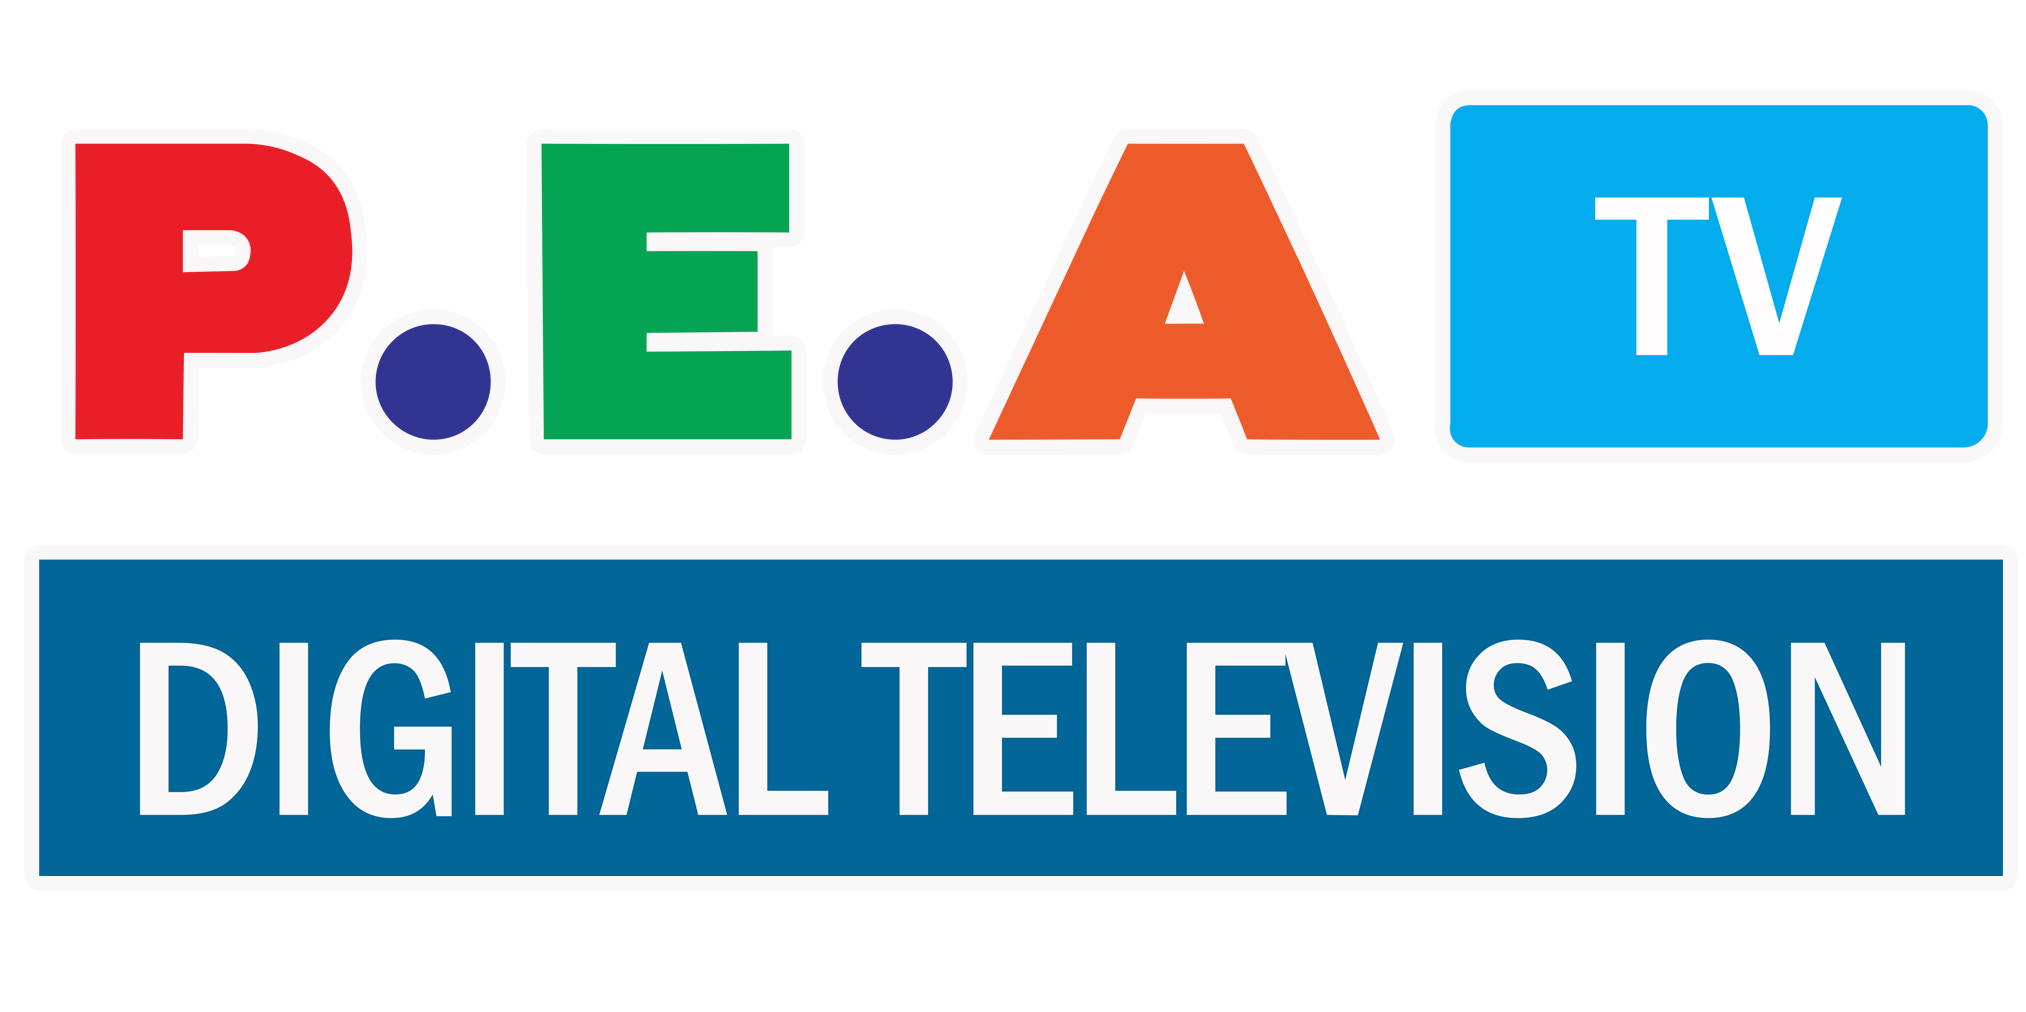 ระบบทีวีอาคาร – P.E.A. Digital Television